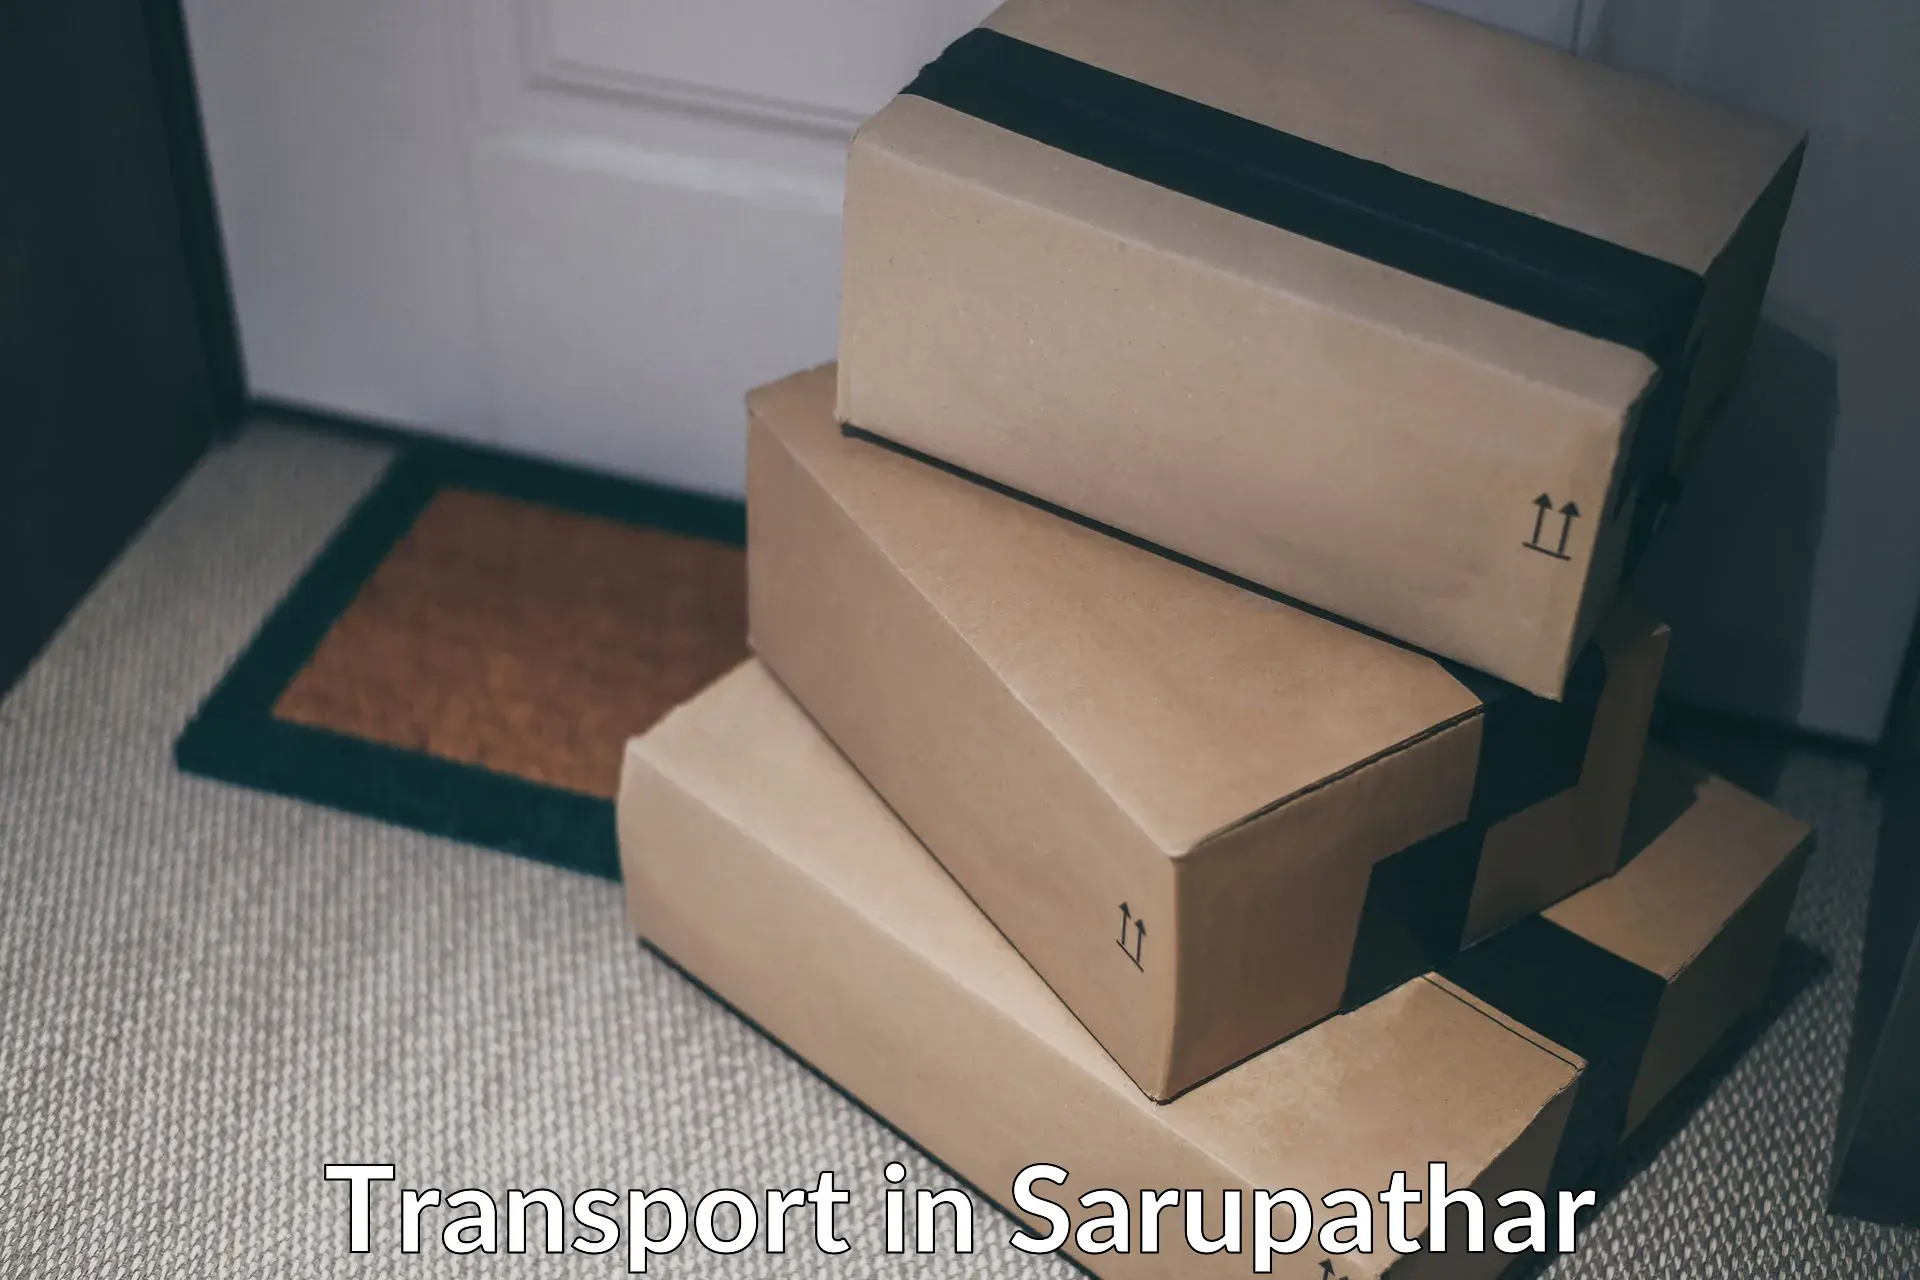 Parcel transport services in Sarupathar